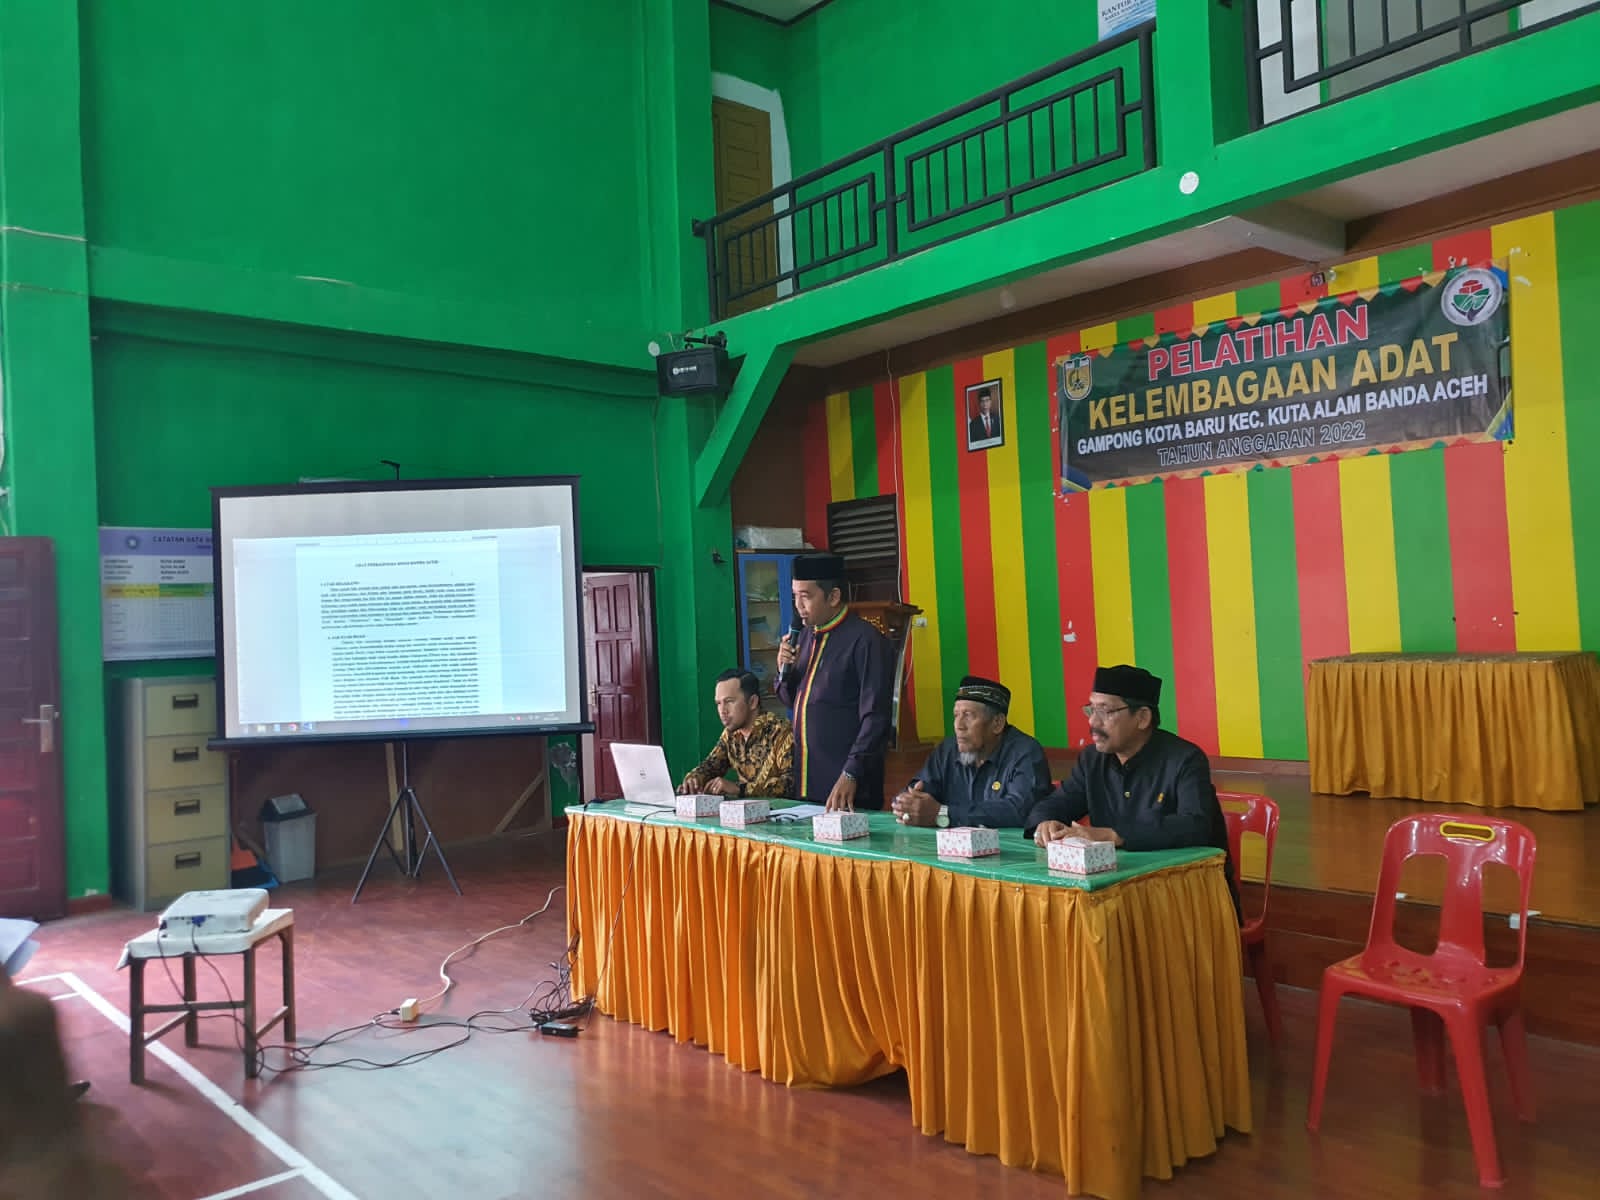 MAA Banda Aceh Adakan Pelatihan Adat Perkawinan di Gampong Kota Baru